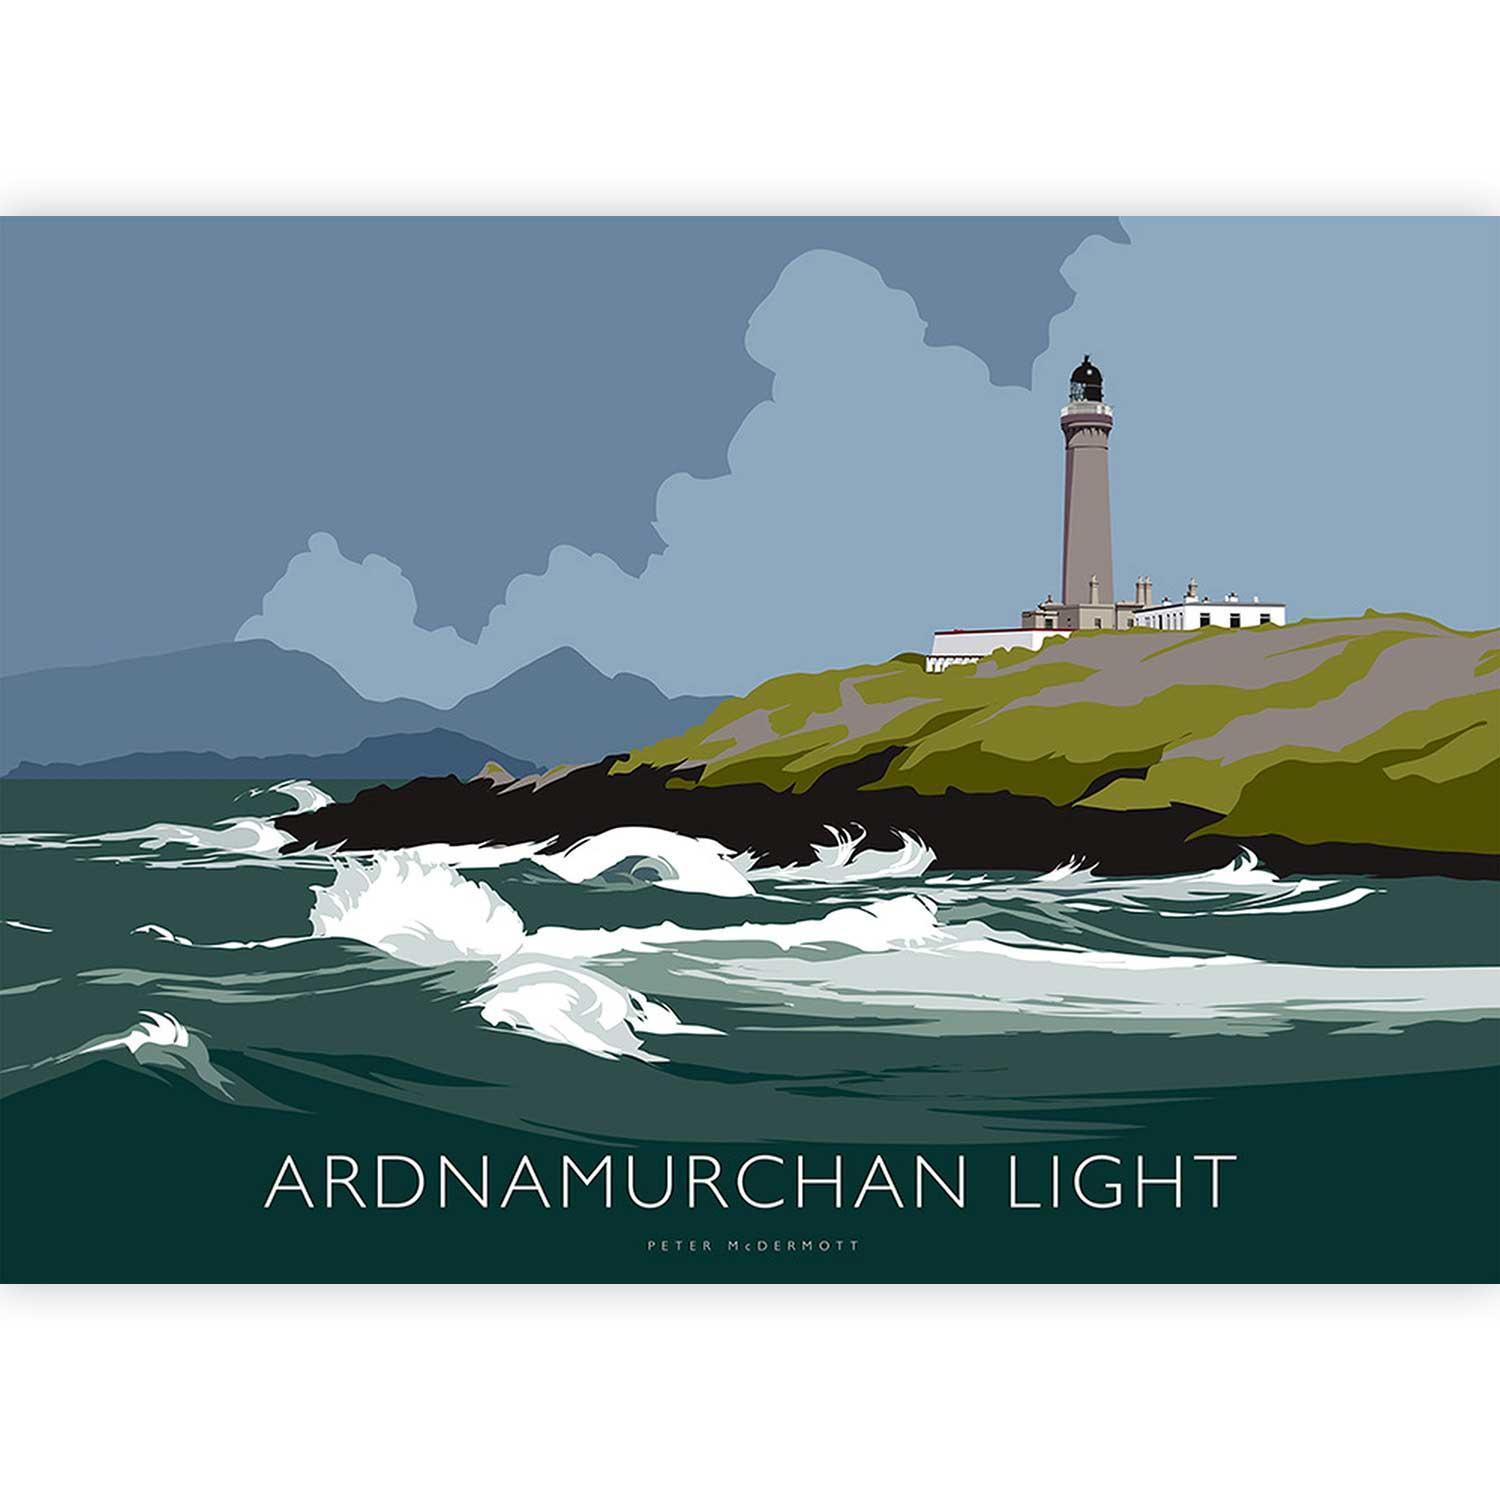 Ardnamurchan Light by Peter McDermott